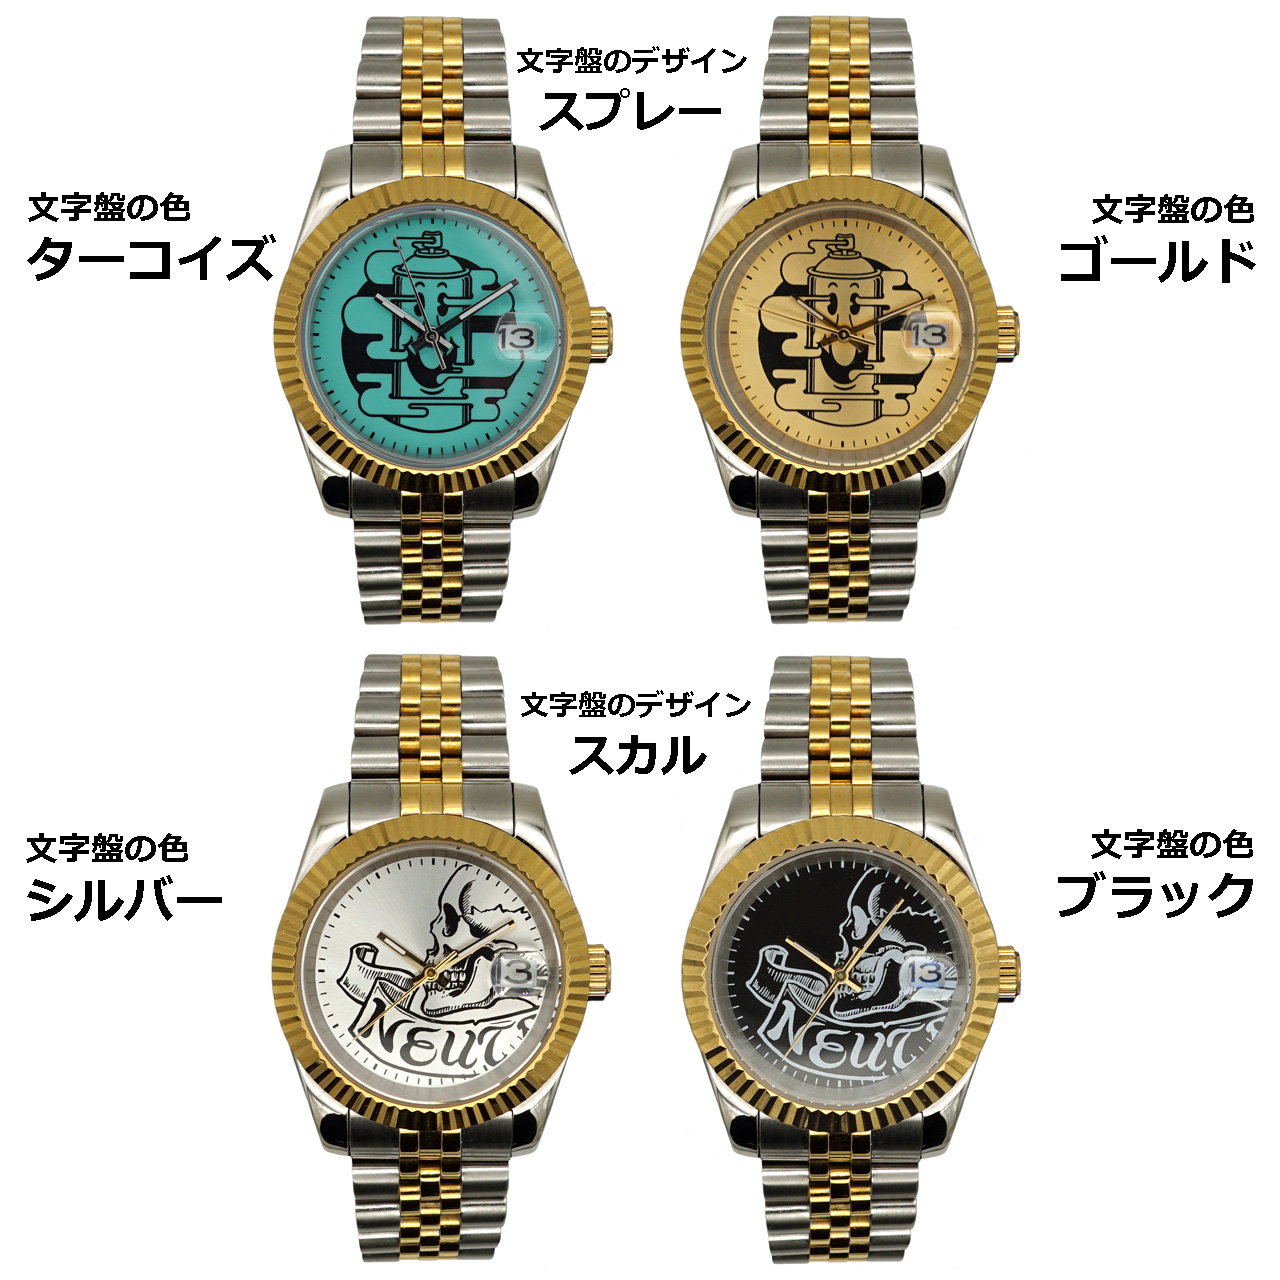 ニュートラル 腕時計 ガクレ neutral watch gakure